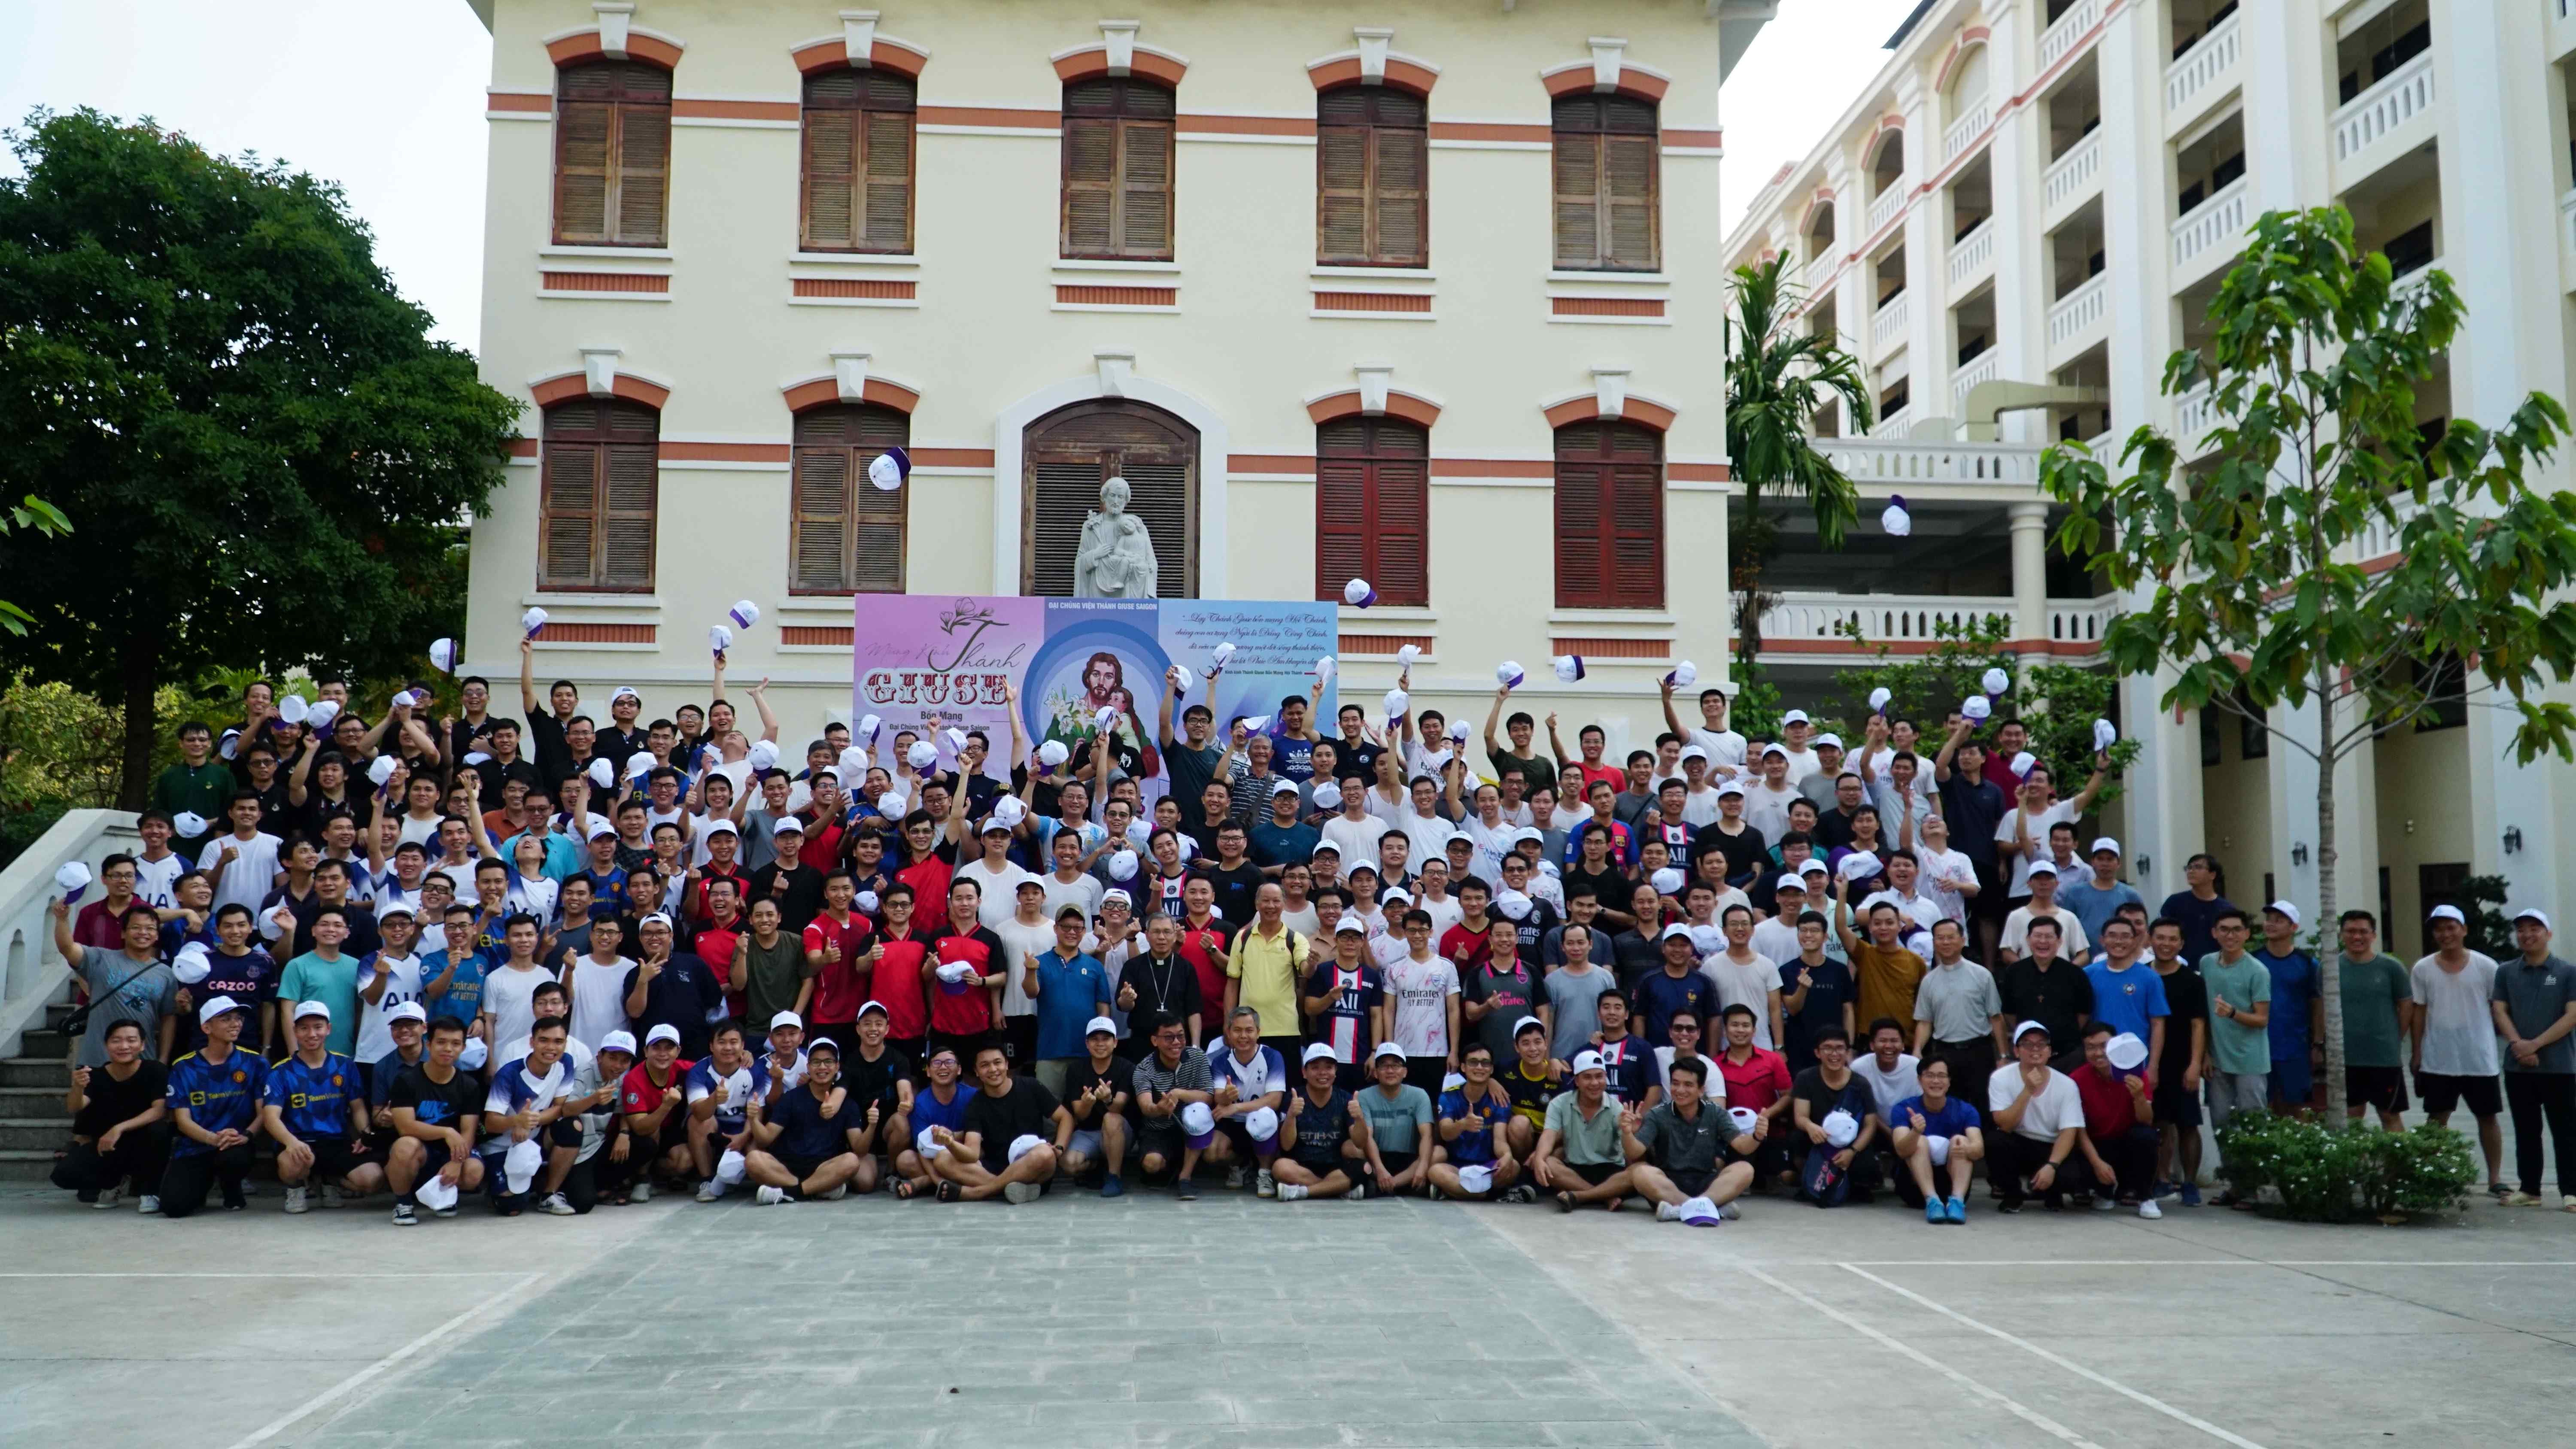 ĐCV Thánh Giuse Sài Gòn: Mừng lễ Thánh Giuse bổn mạng